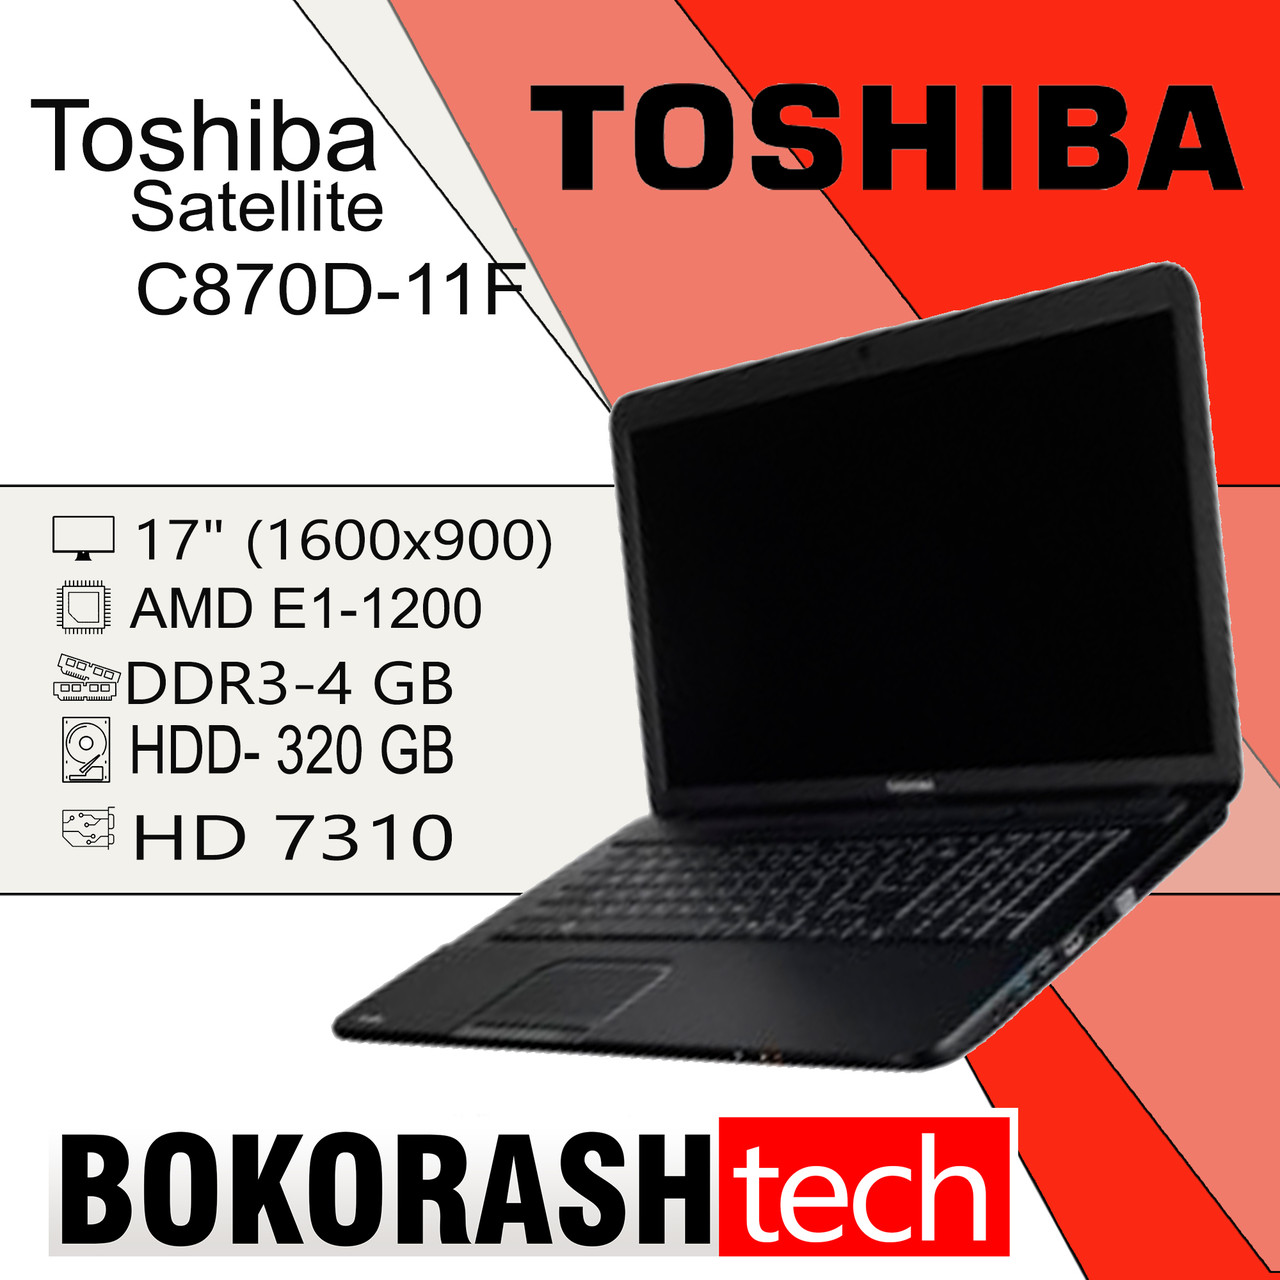 Купить Ноутбук Тошиба В Интернет Магазине Украина